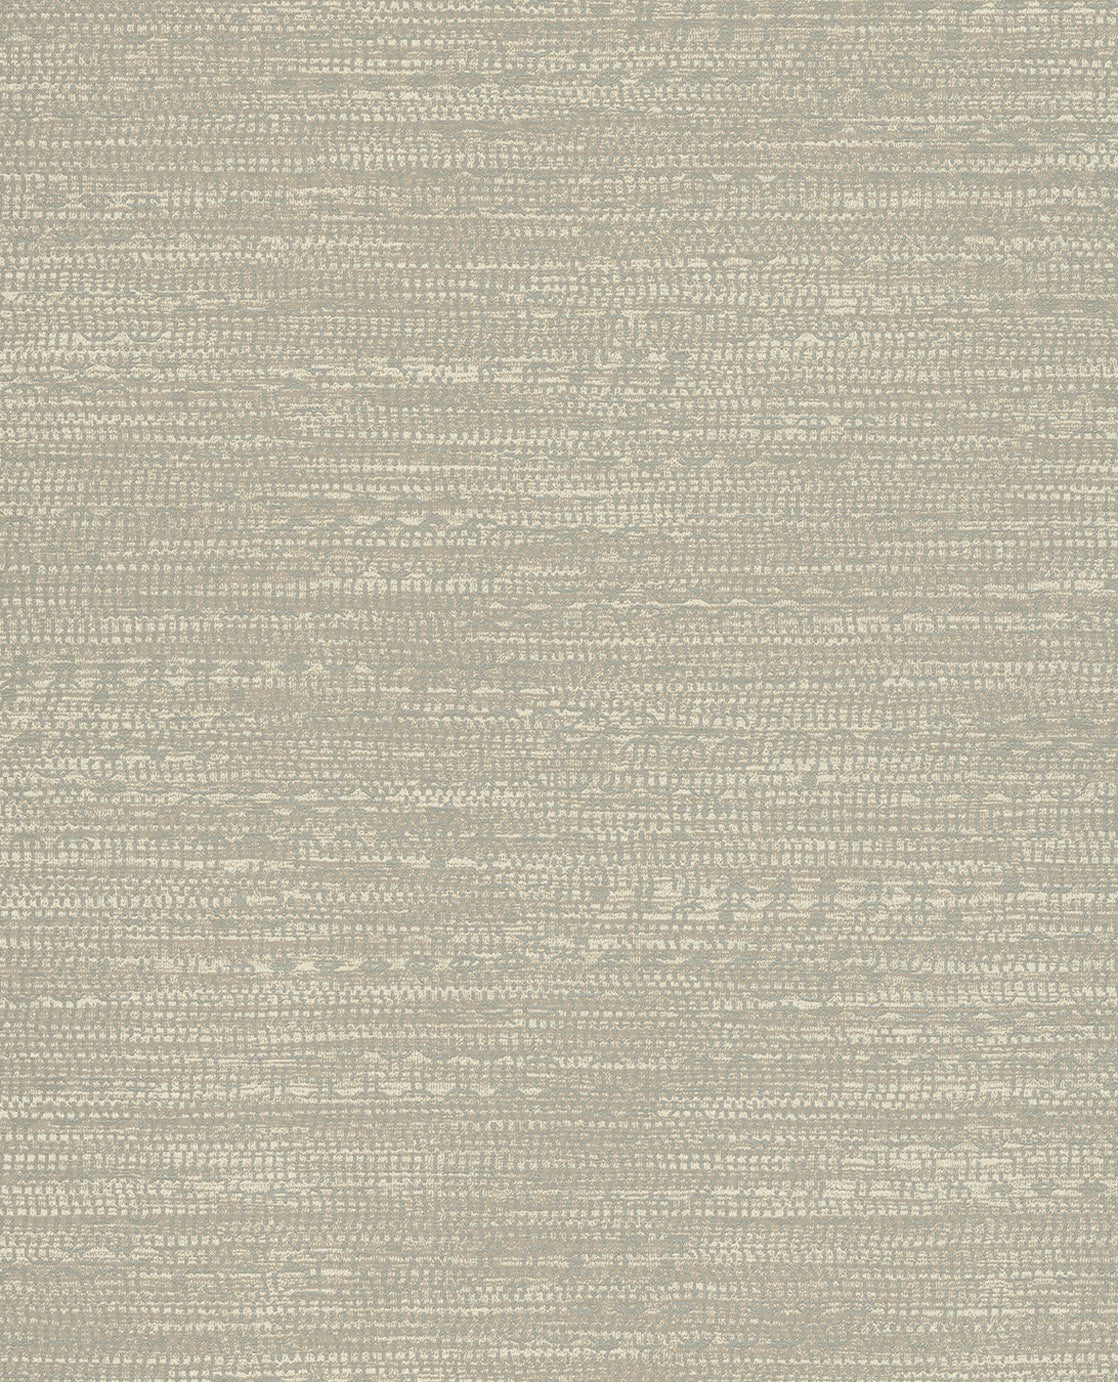 Siroc Textured Semi-plain wallpaper